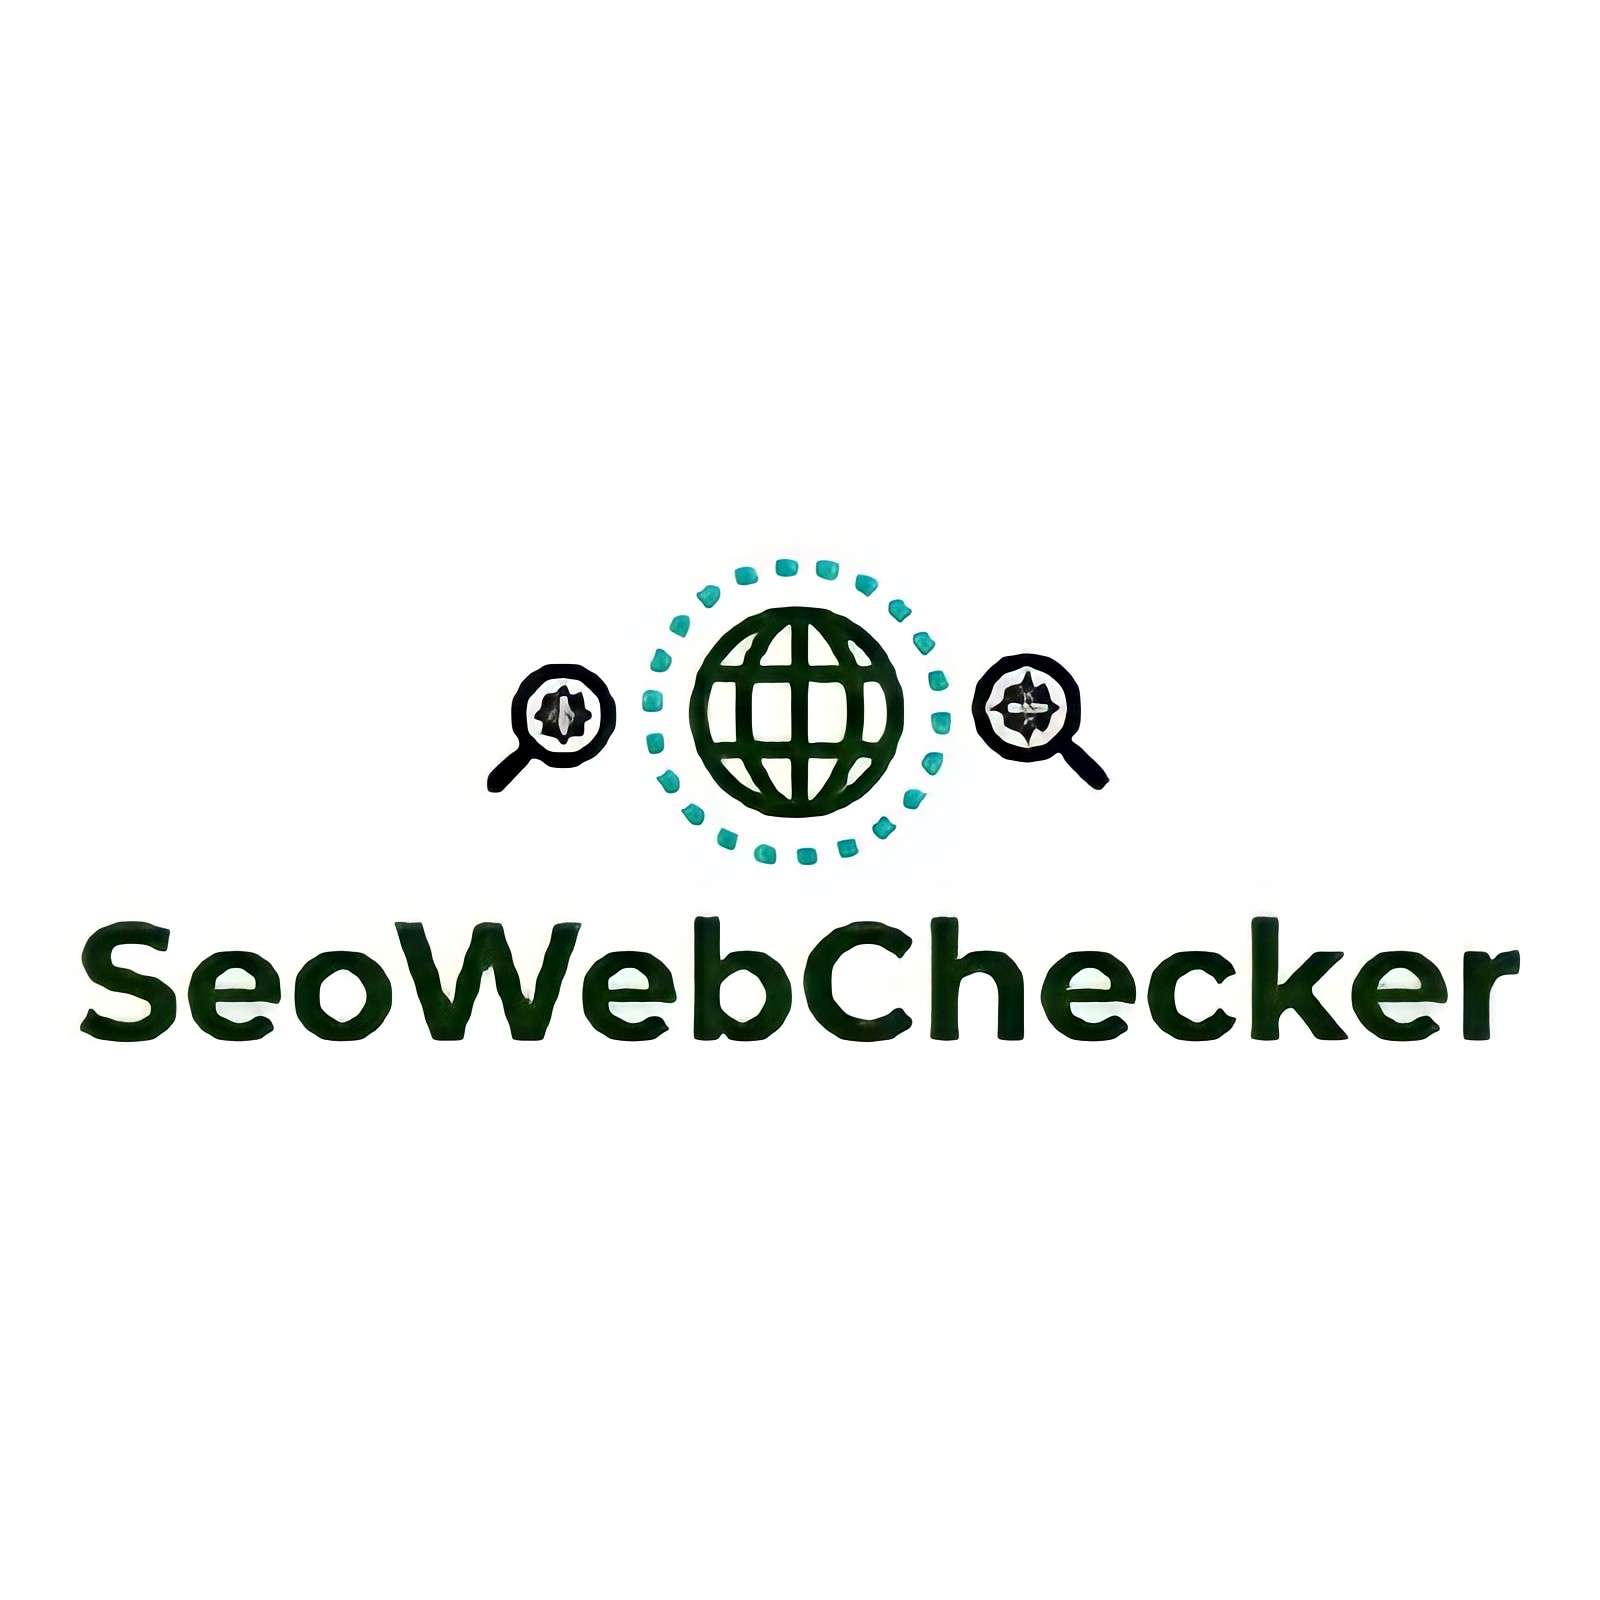 SeoWebChecker logo